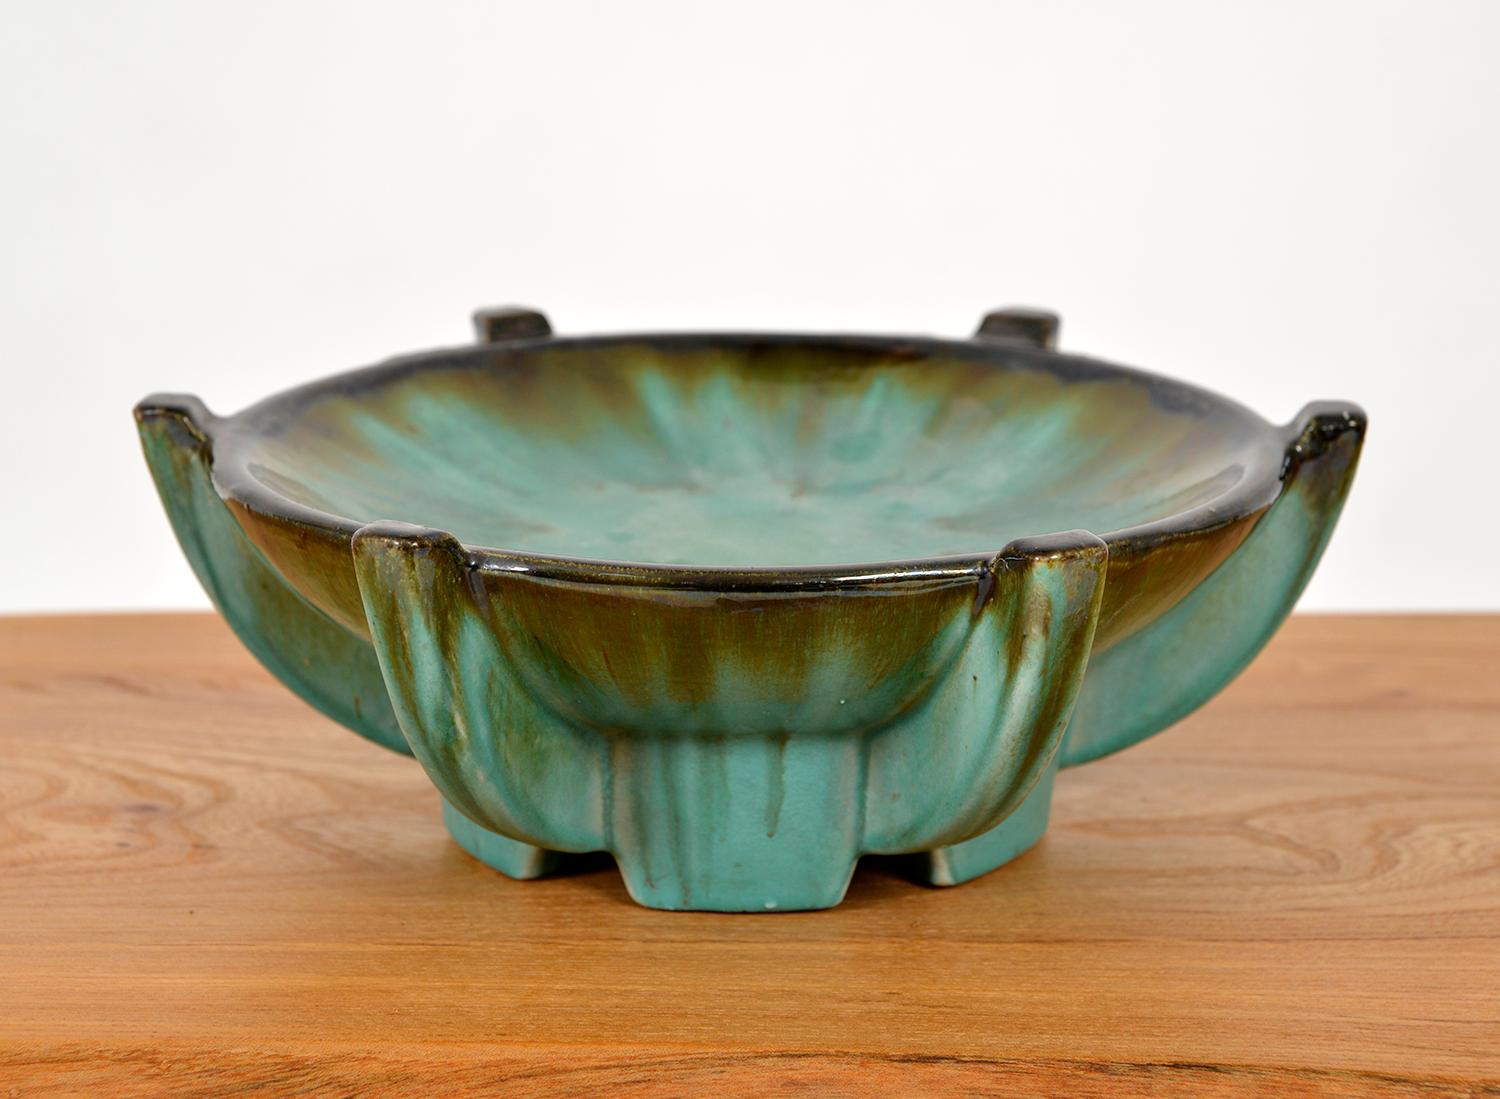 Cette très élégante poterie d'art Tazza par les Faïenceries de Thulin a un aspect Art déco incomparable avec un magnifique extérieur décoratif émaillé au goutte-à-goutte dans les verts et les turquoises. La base porte la mention 